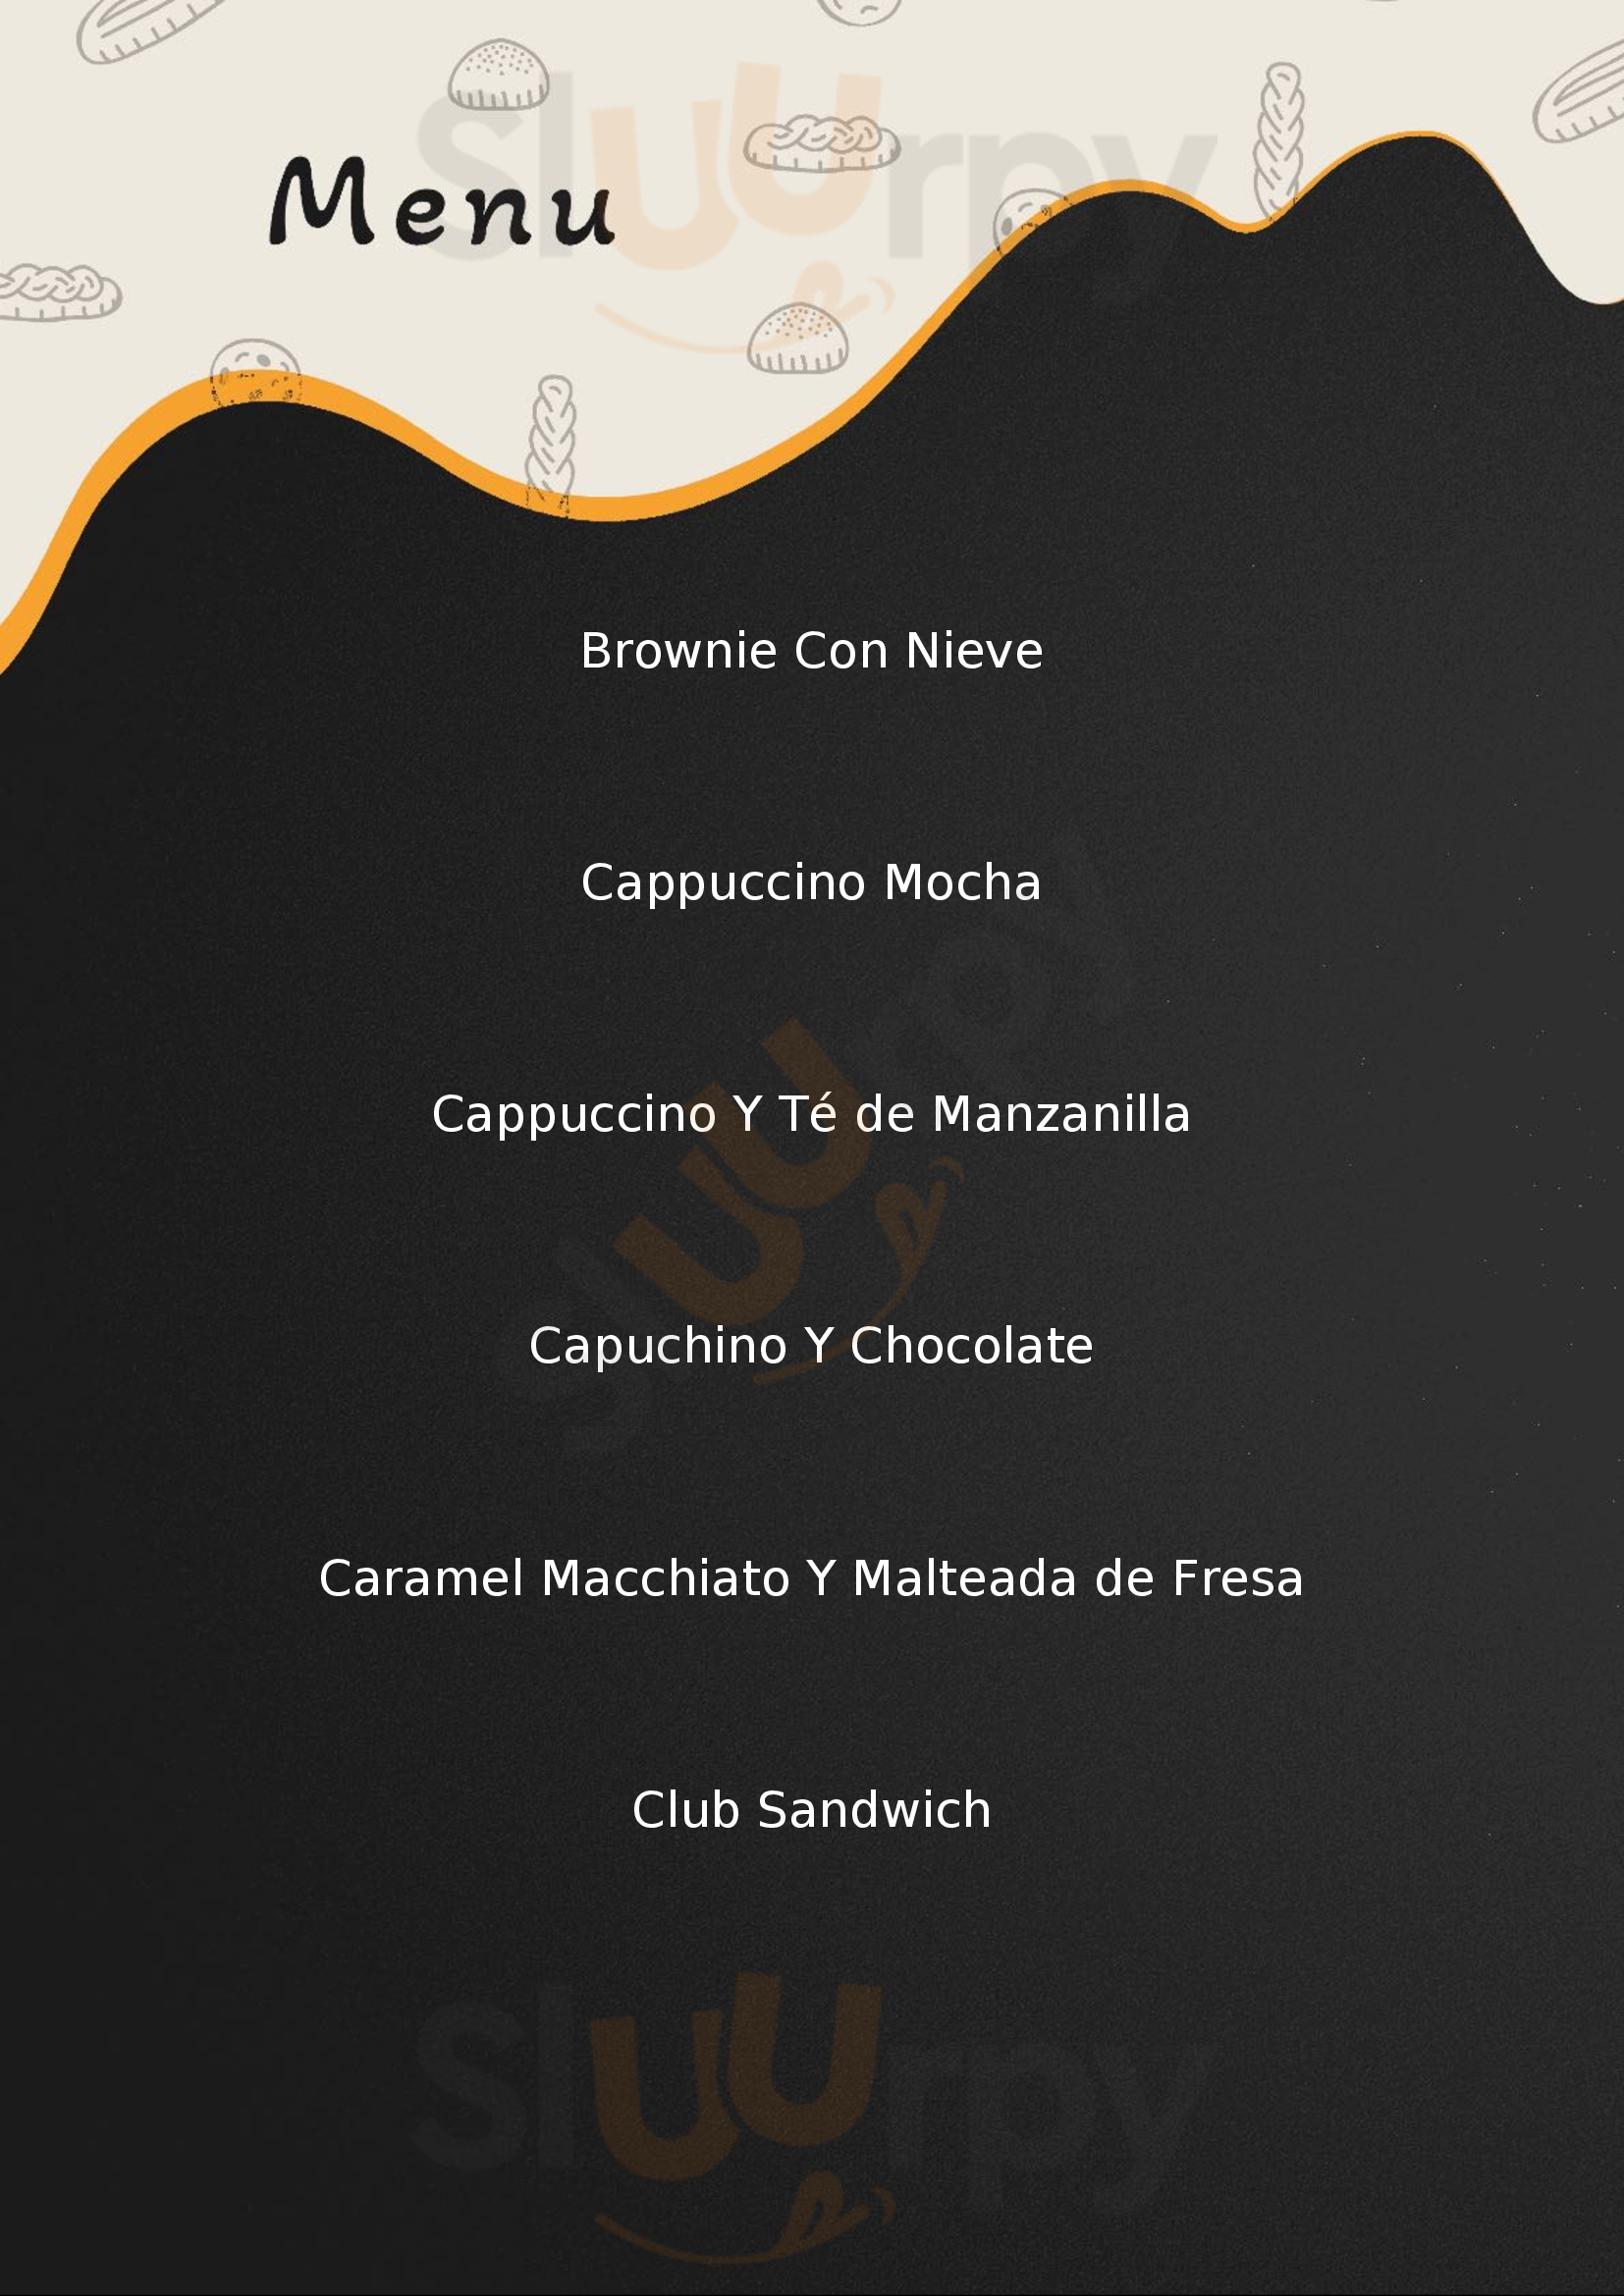 La Esquina Del Cafe Colima Menu - 1